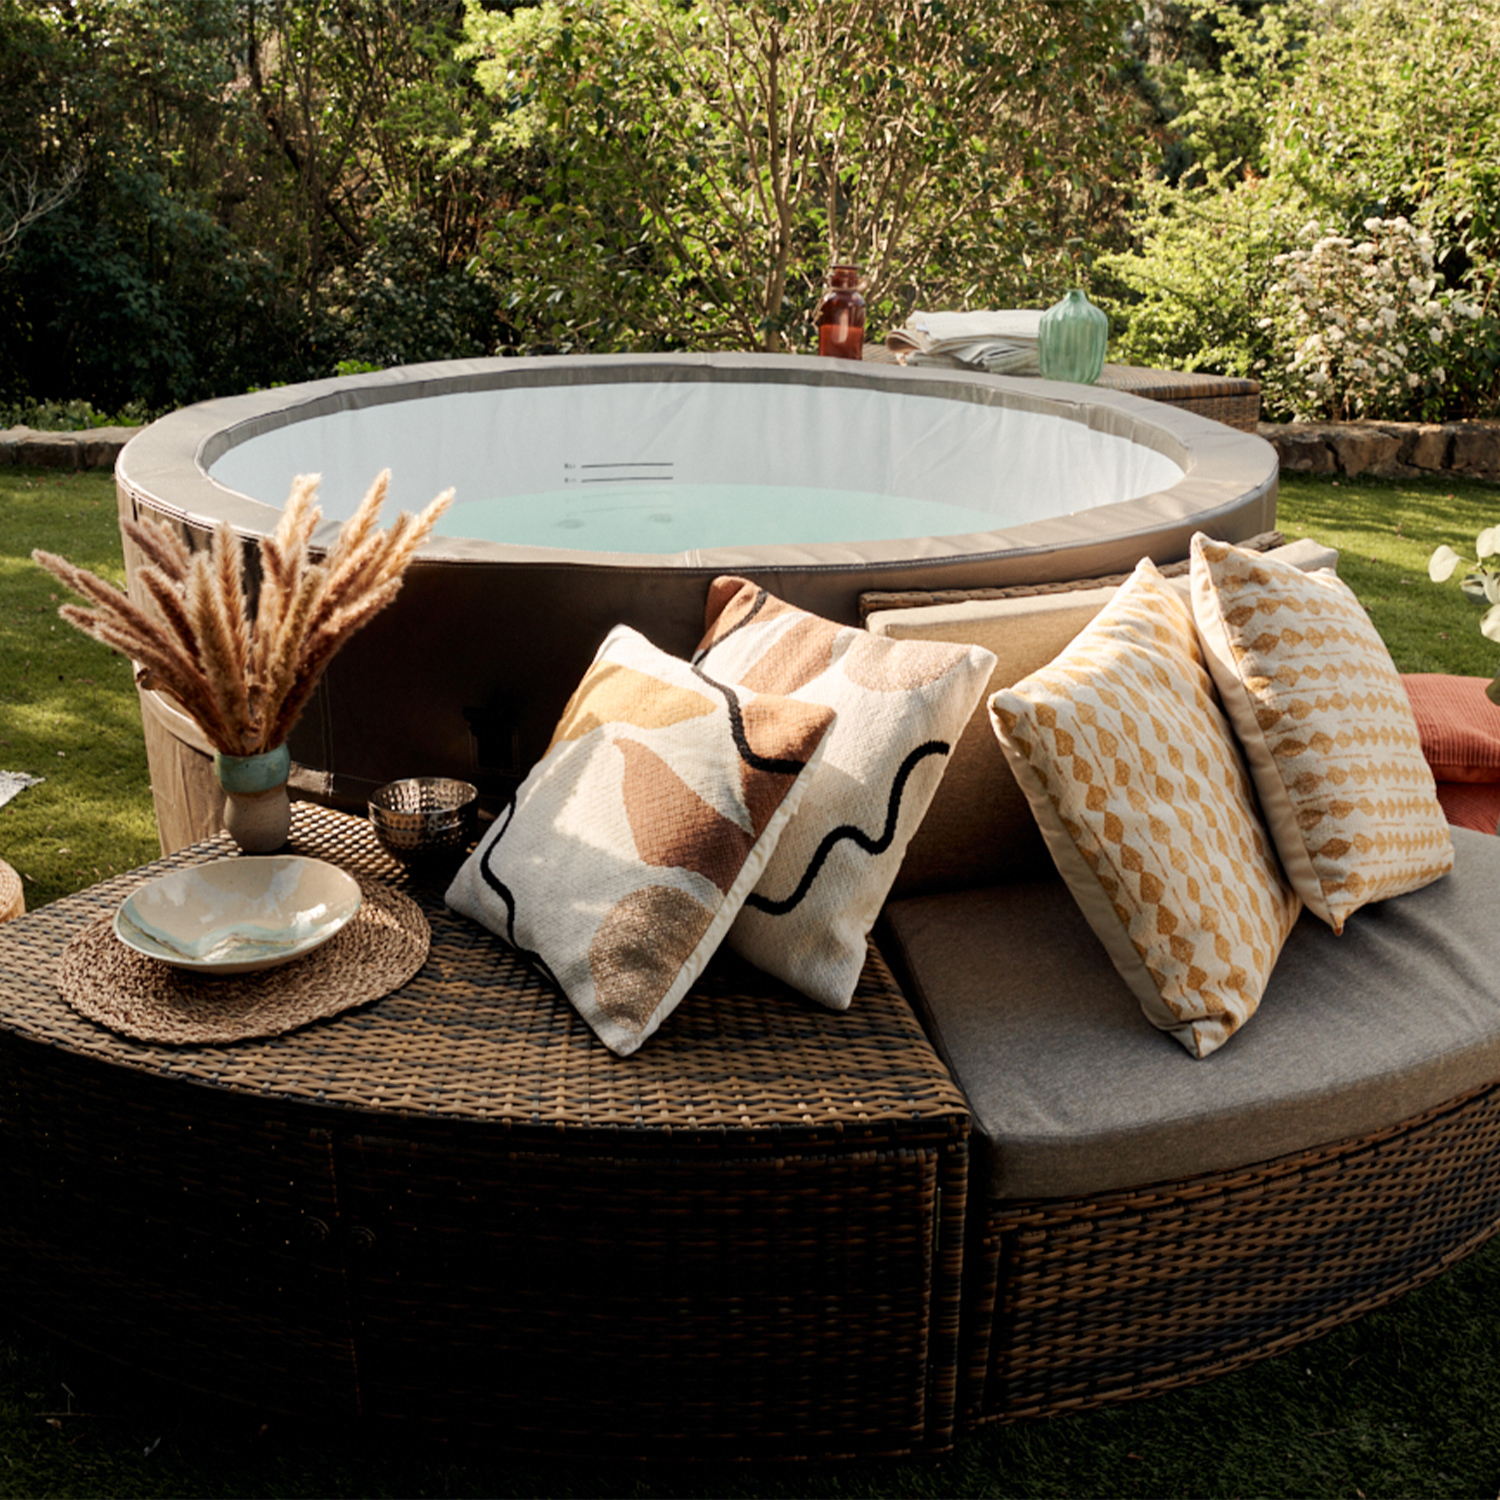 Netspa semi-rigid hot tub Vita Premium family